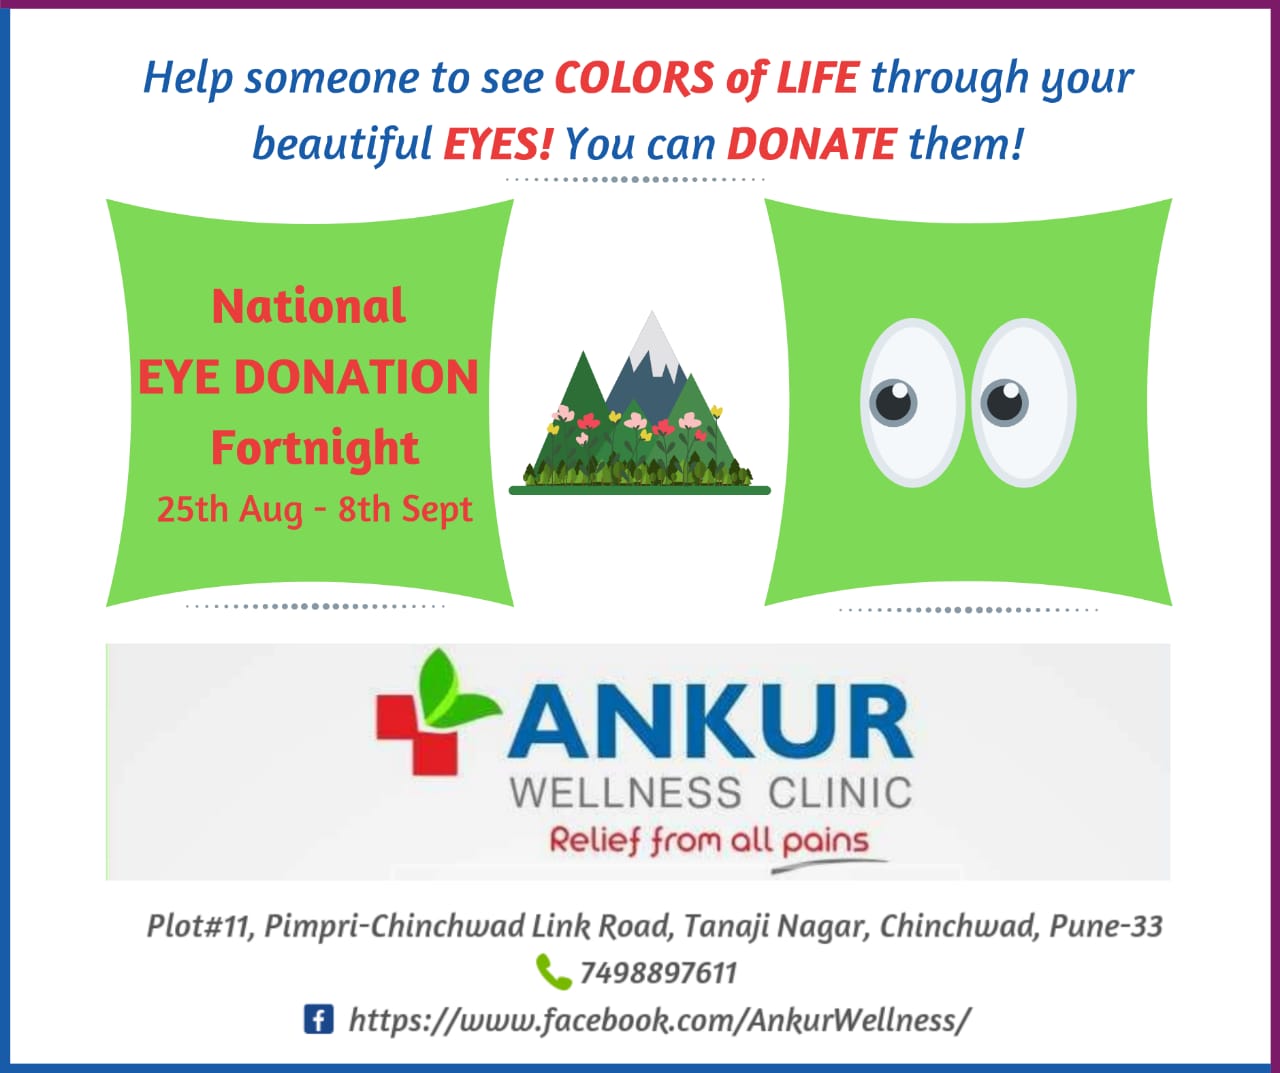 National Eye Donation Fortnight